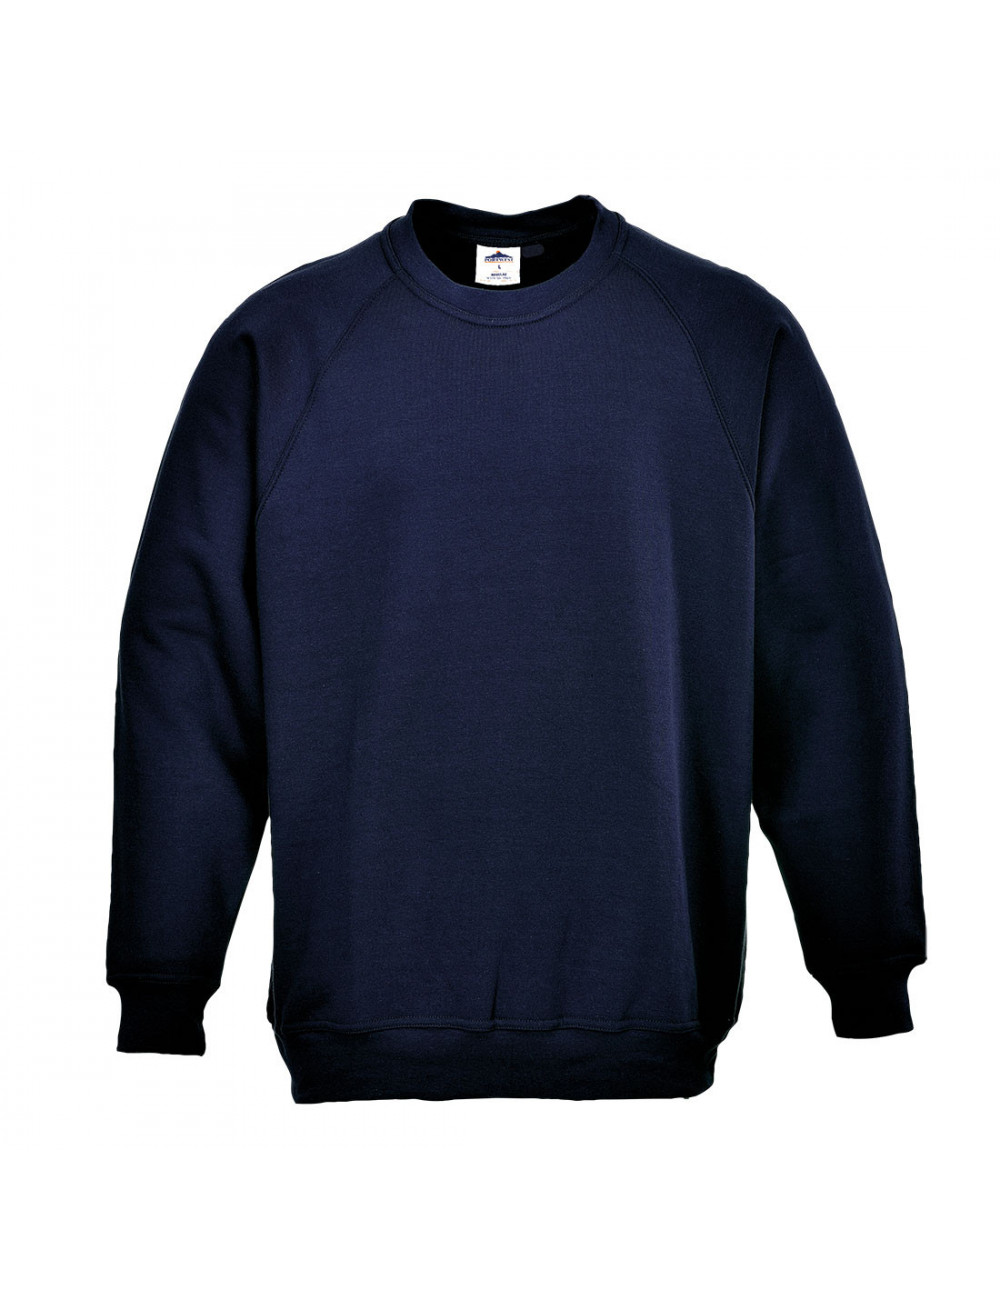 Roma-Sweatshirt, dunkelblau, Portwest